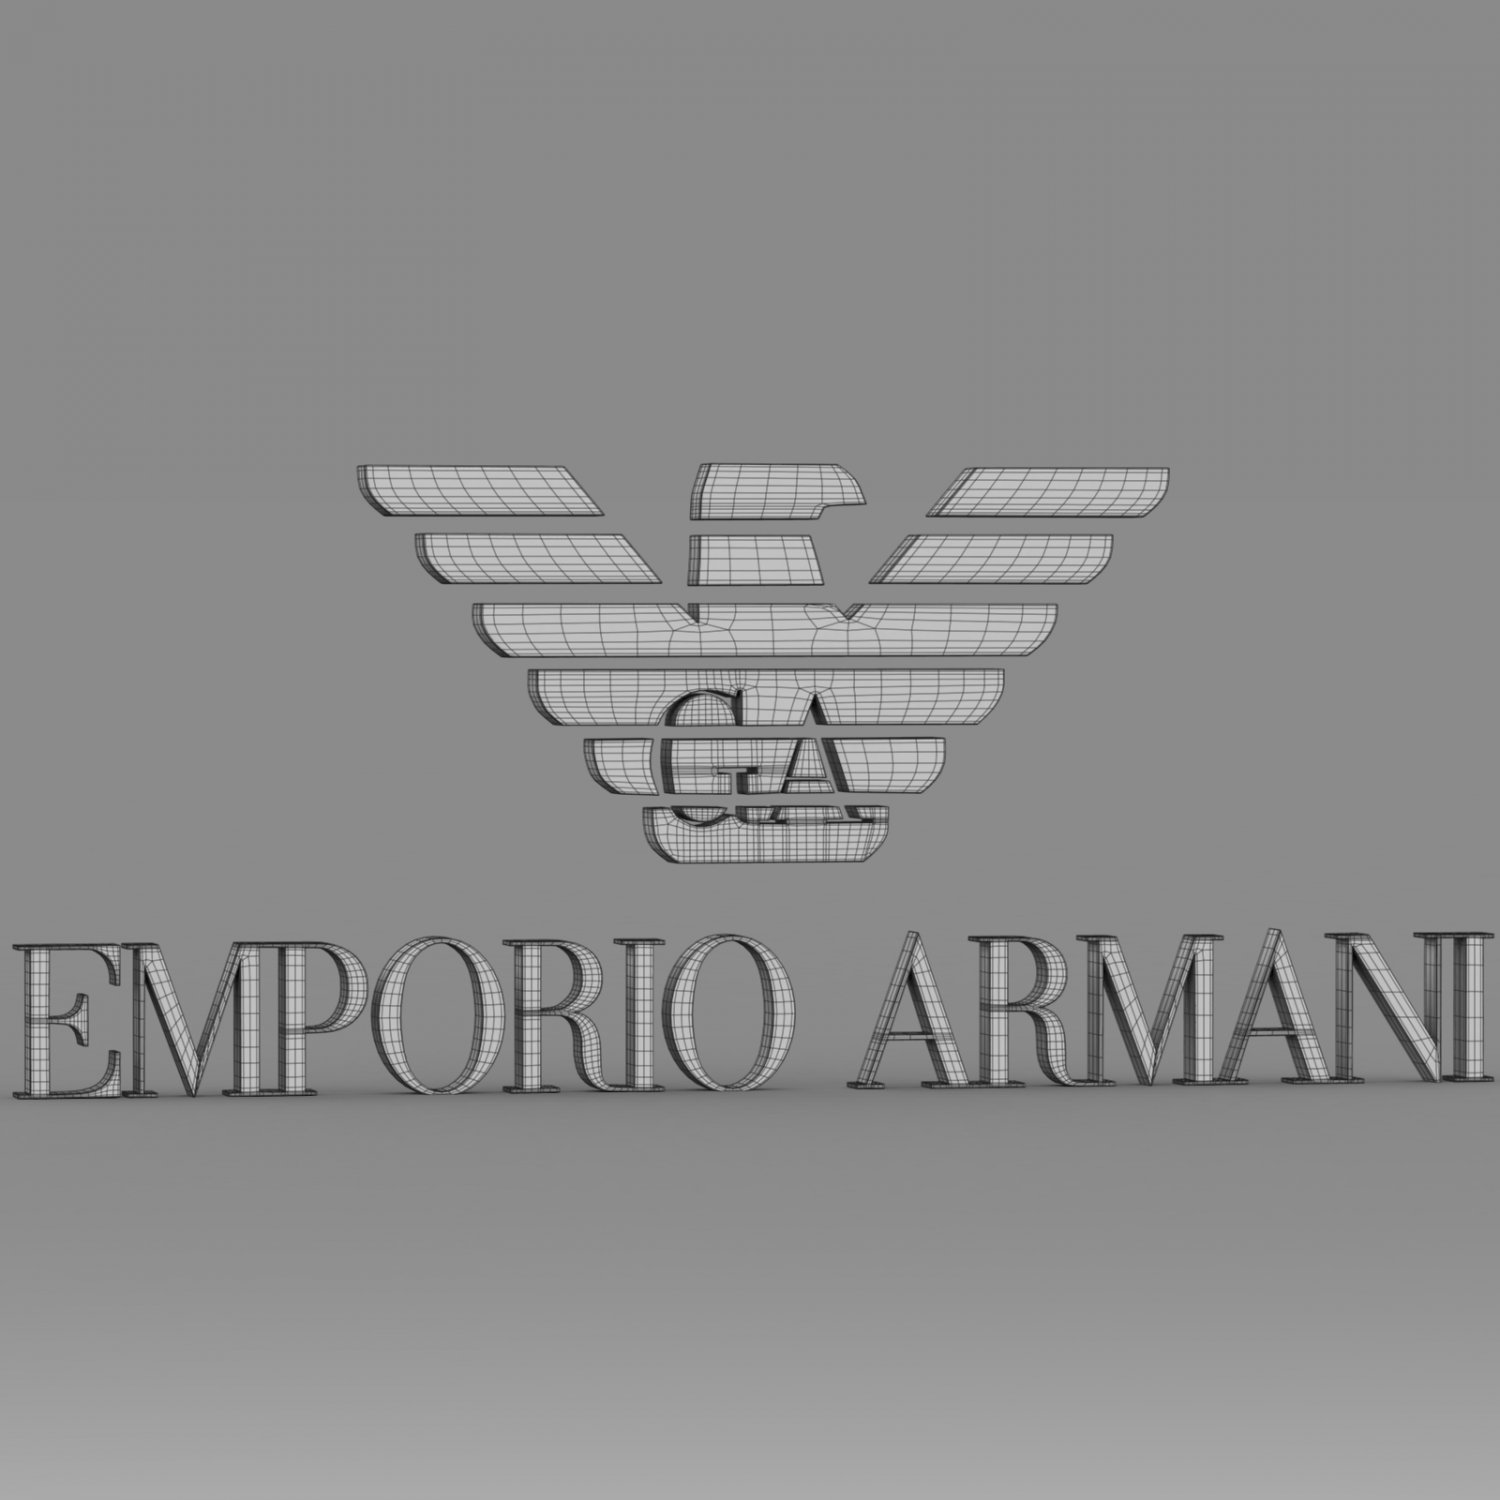 Emporio armani logo 3D Model in 